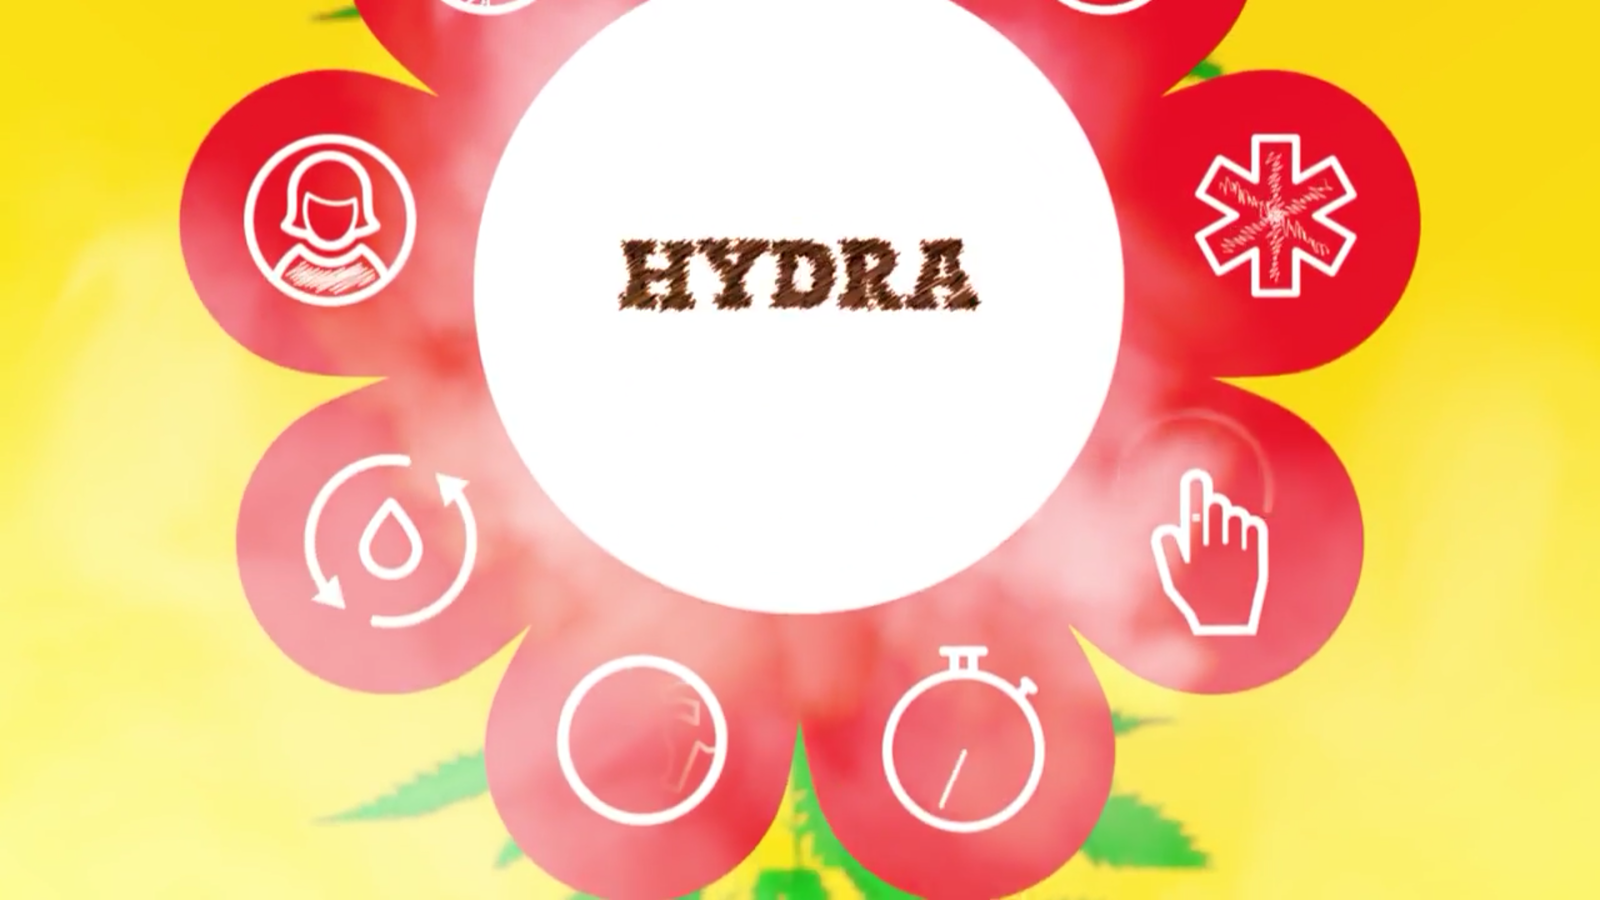 Hydra реклама ютуб флер наркотик как отличить подделку